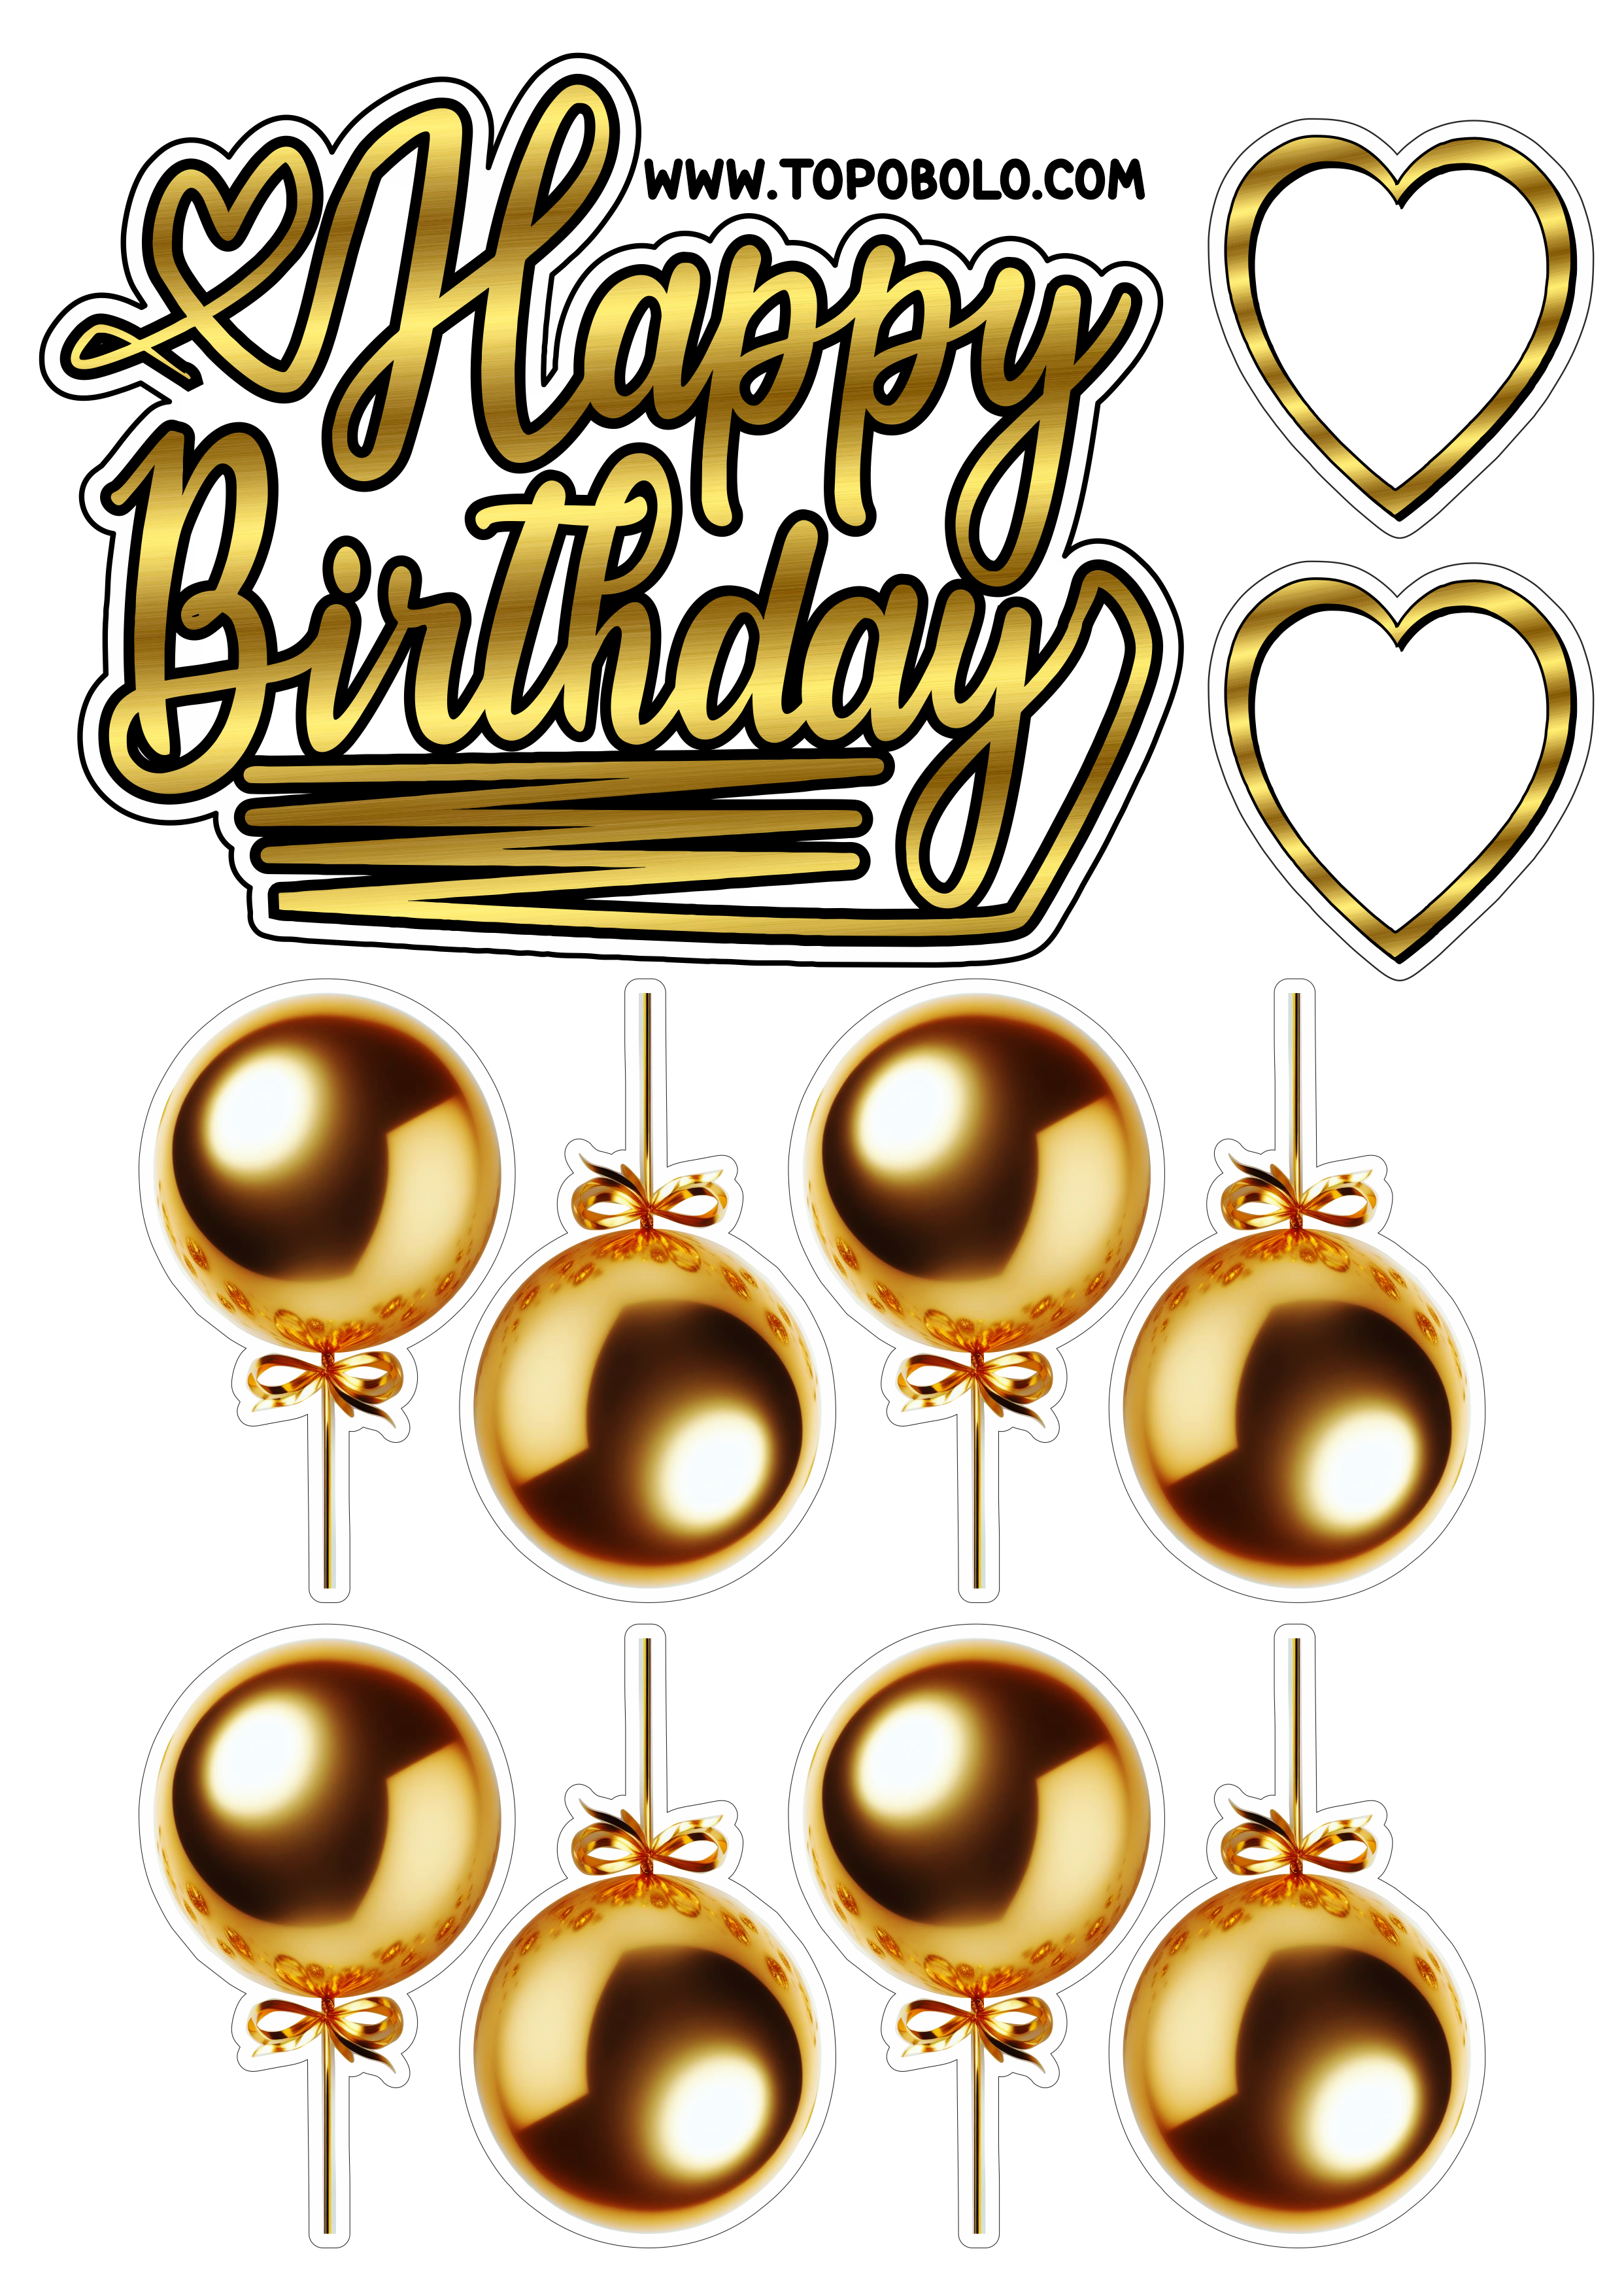 Topo de bolo para imprimir Happy Birthday aniversário dourado com corações e balões artigos de papelaria png